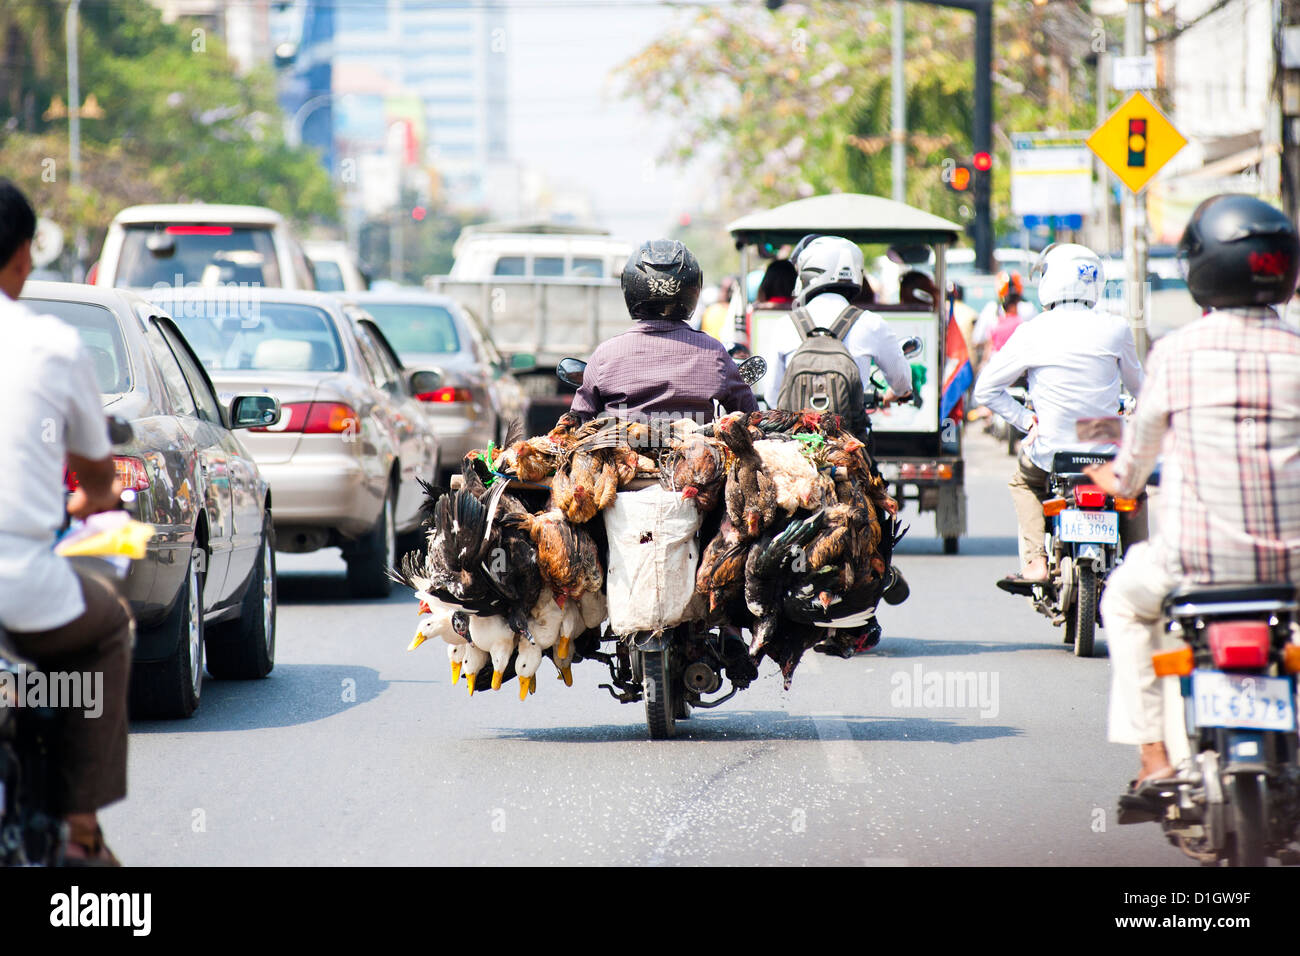 Vivre les poulets et les canards sont prises au marché sur un cyclomoteur à Phnom Penh, Cambodge, Indochine, Asie du Sud, Asie Banque D'Images